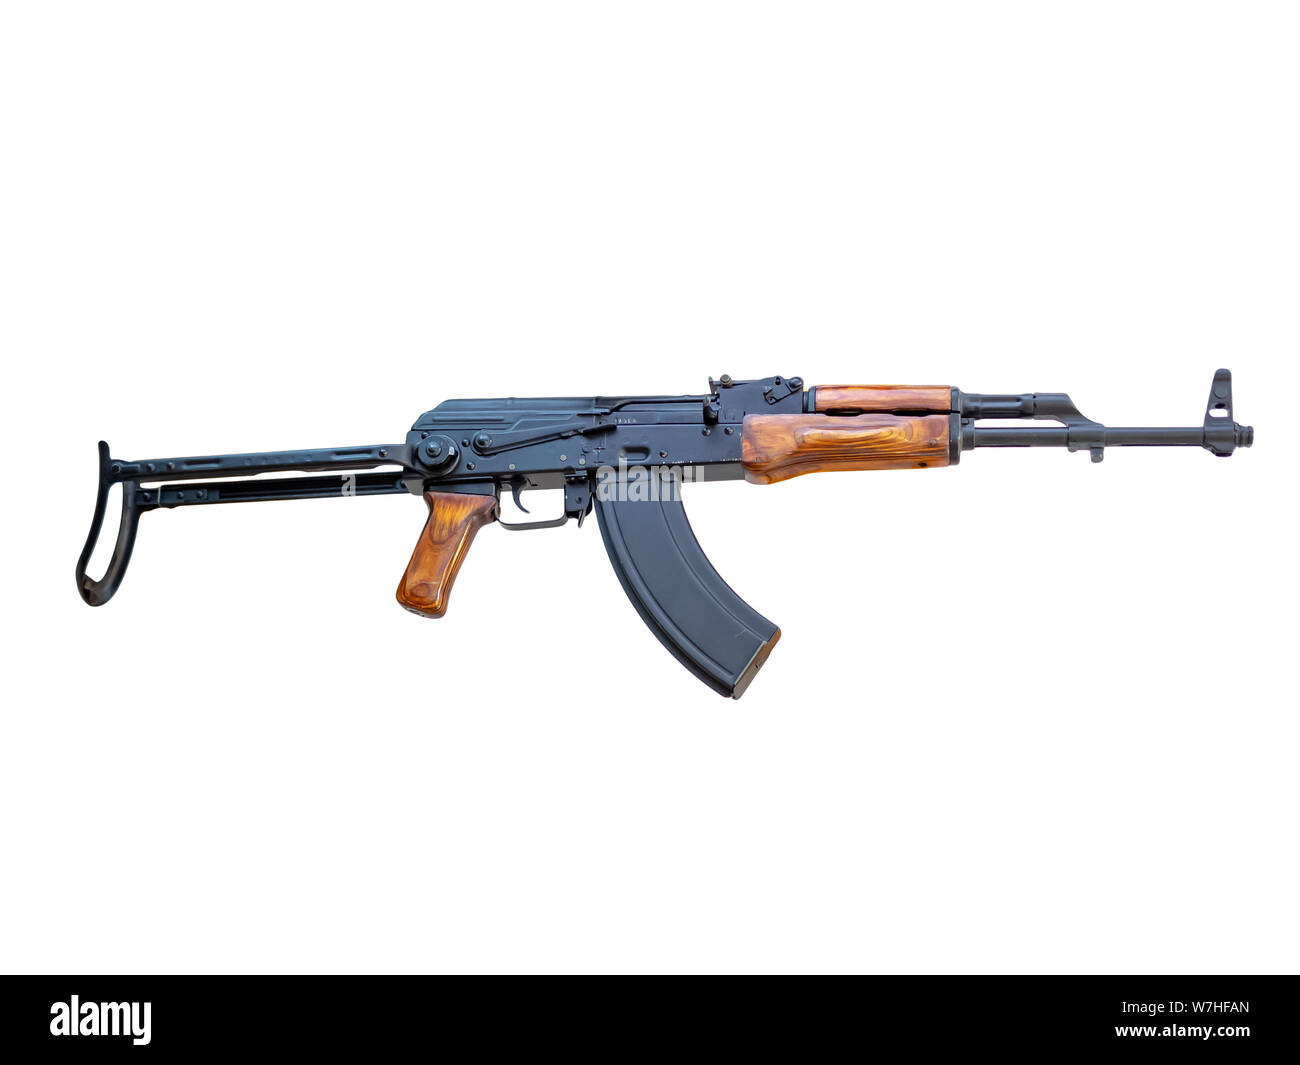 1959 7.62mm AKMS (Modernized Kalashnikov Automatic Rifle Folding) isolated on white background Stock Photo